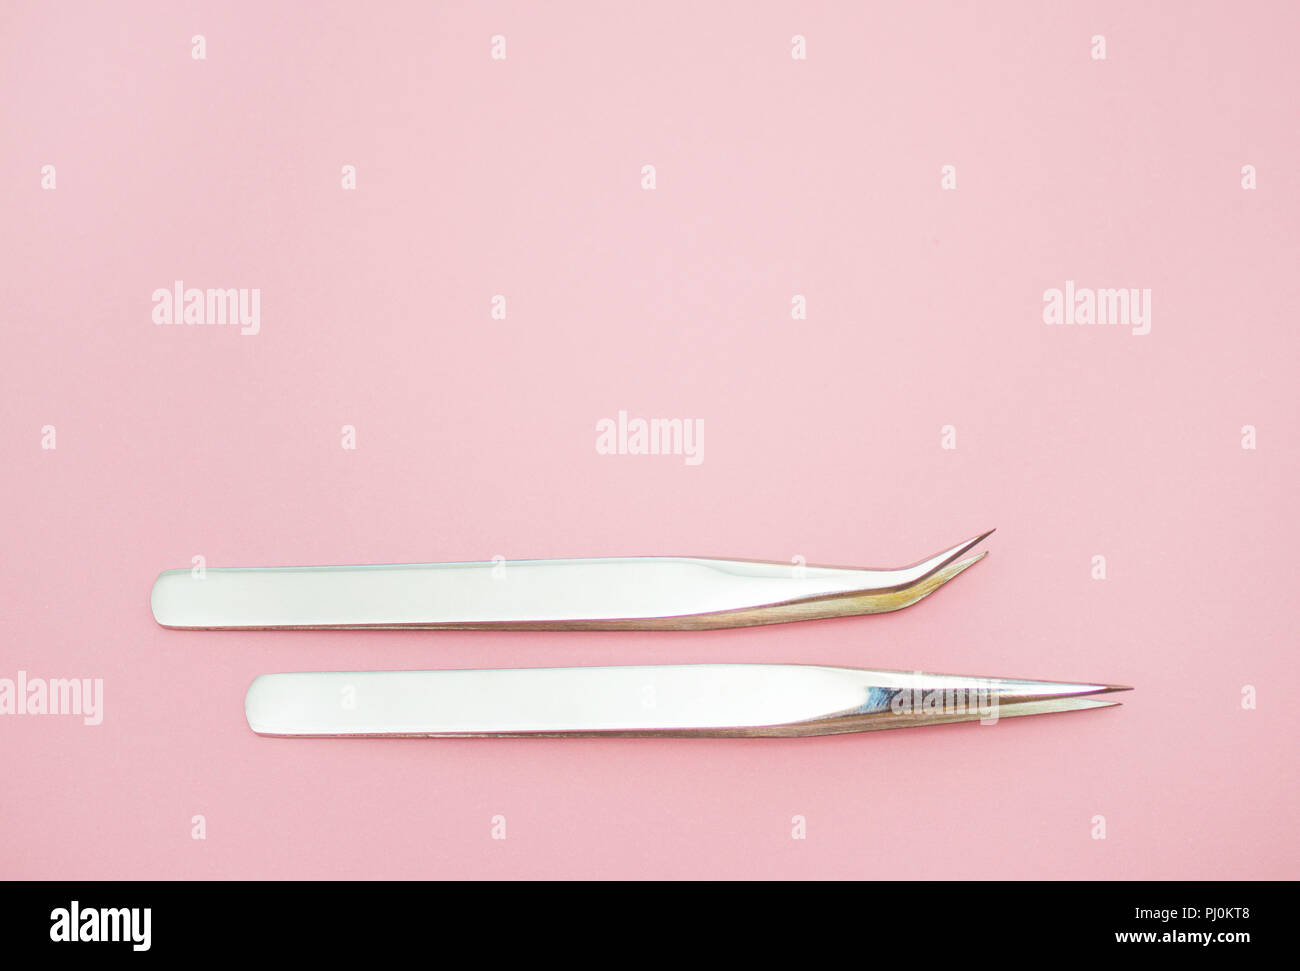 Beauty und Fashion Concept - Werkzeuge für Eyelash Extension Verfahren. Zwei Pinzette auf rosa Hintergrund. Copyspace mockup Stockfoto